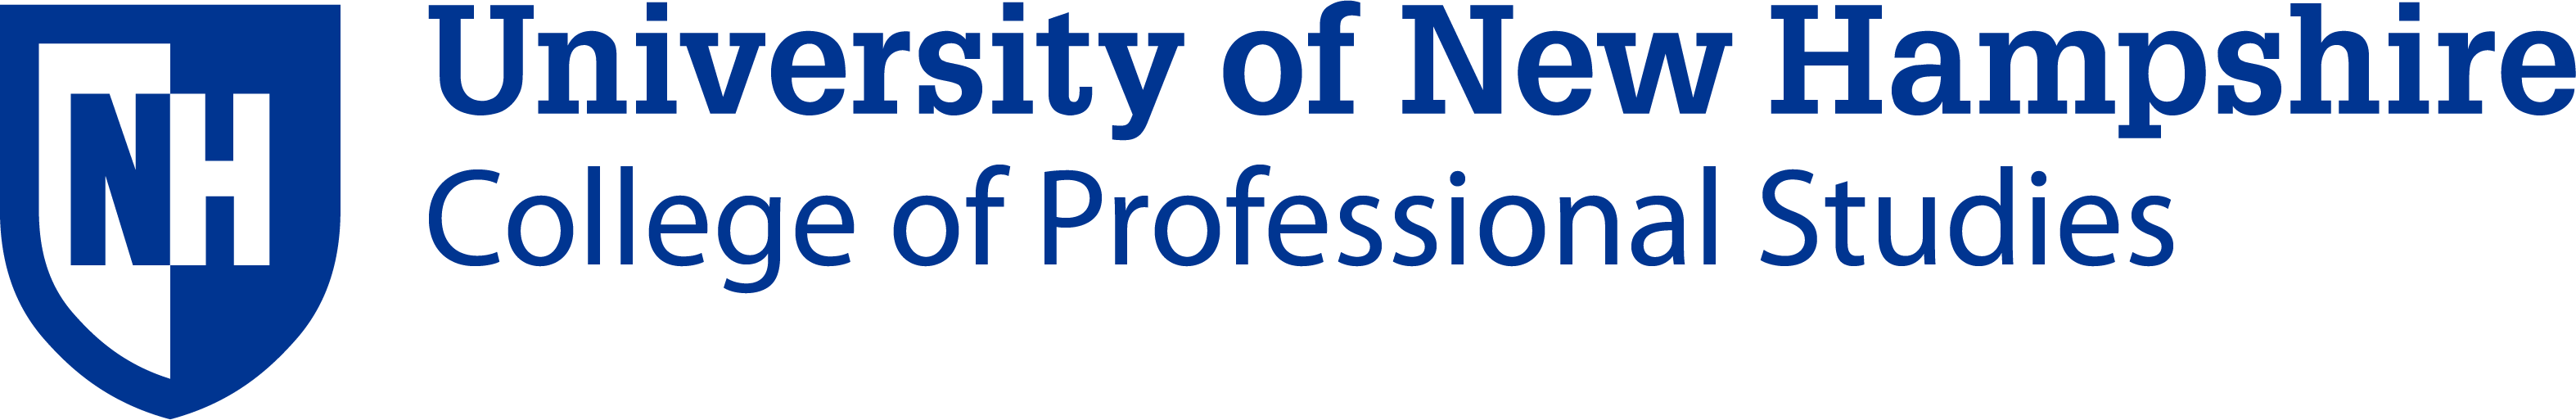 UNH-CPS Header Logo